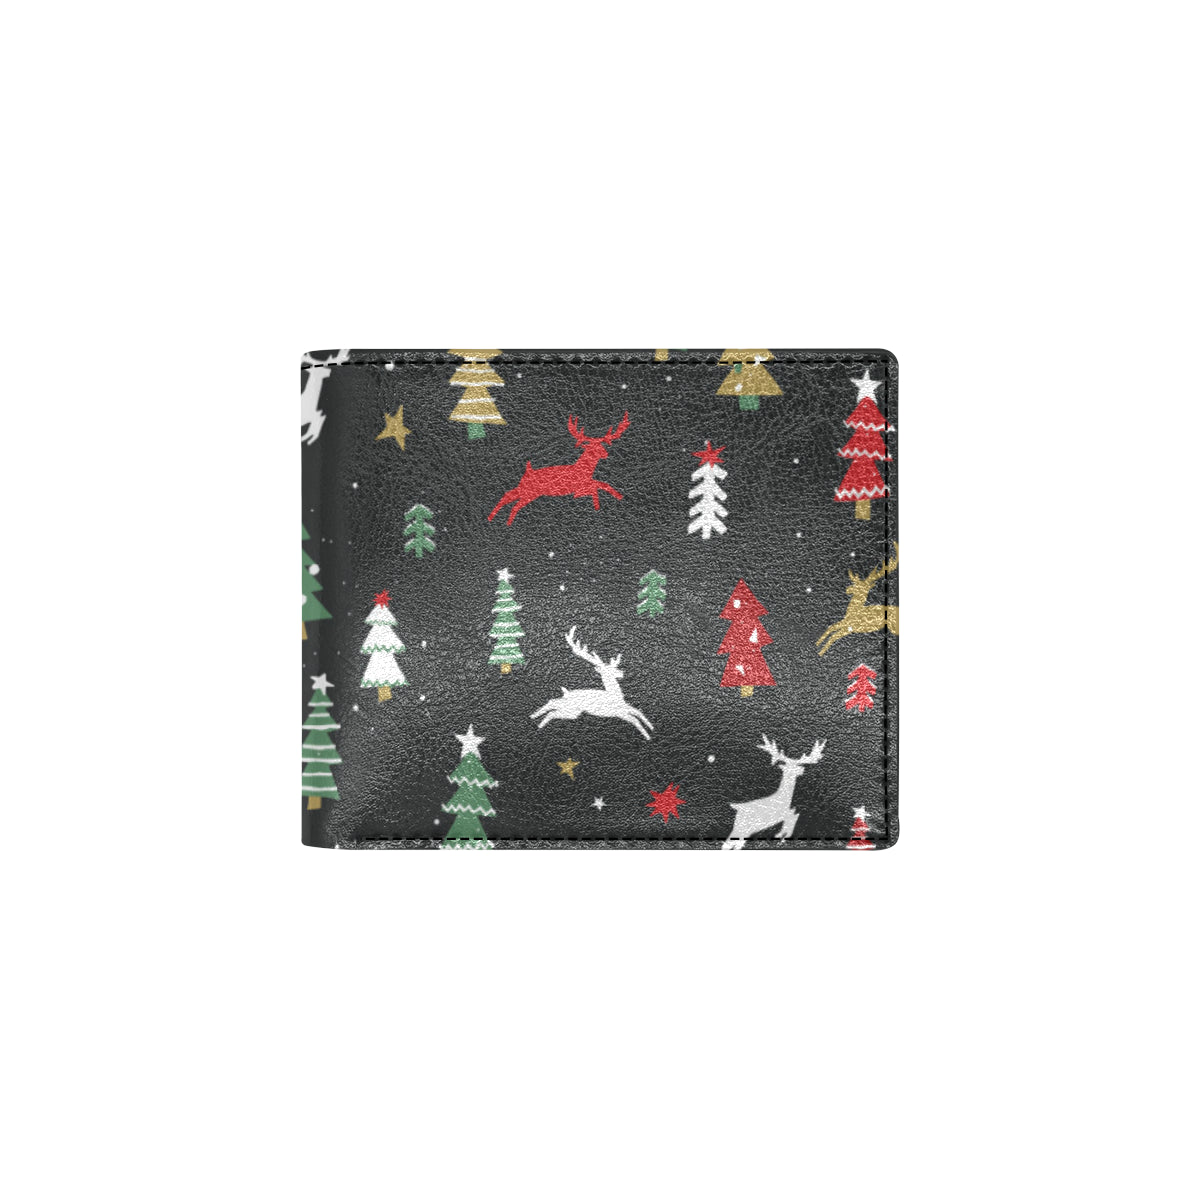 Christmas Tree Deer Style Pattern Print Design 03 Men's ID Card Wallet